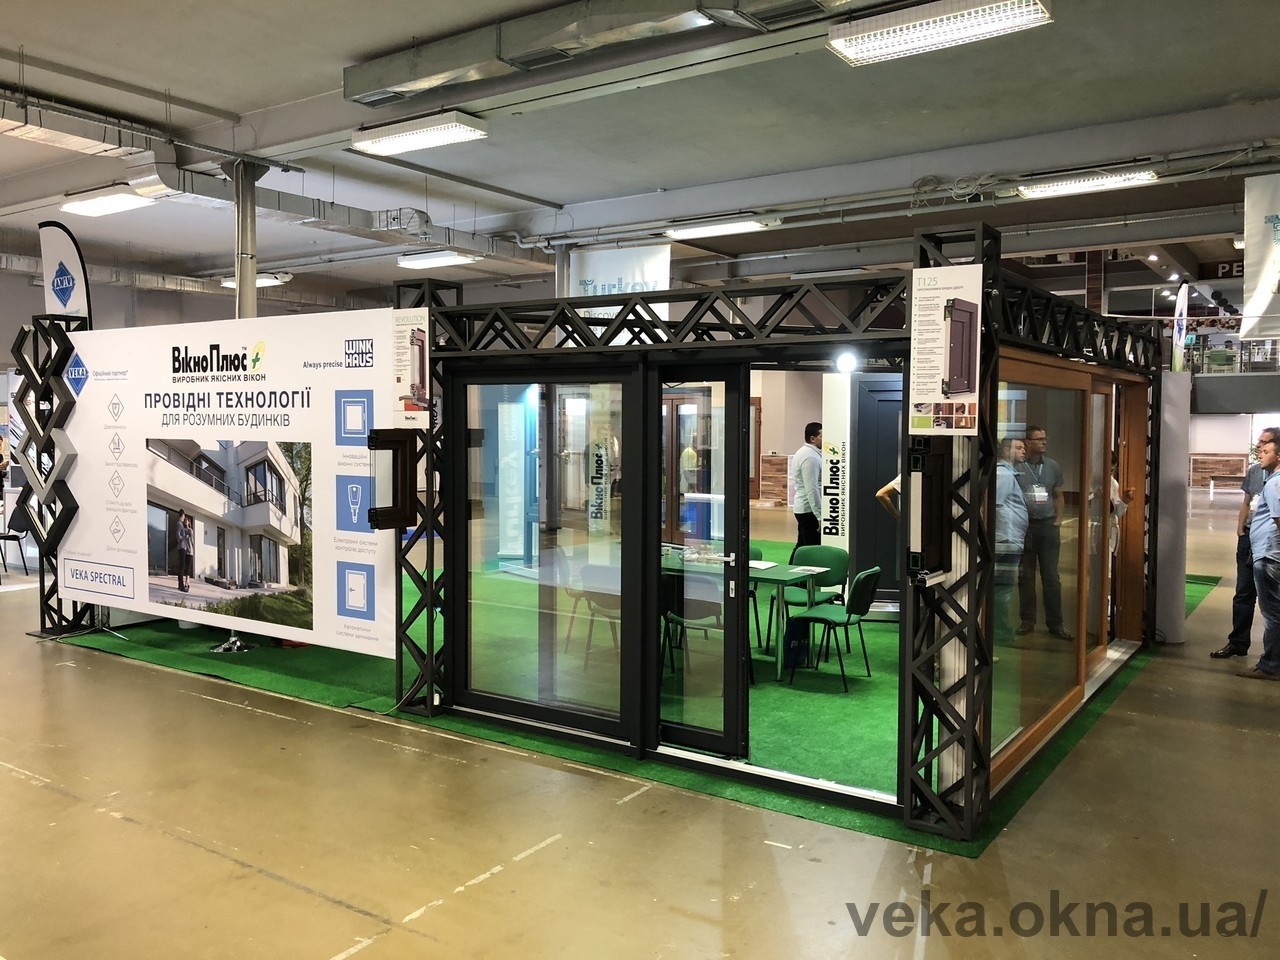 VEKA Україна на WindoL'viv 2018: незмінна якість та відкритість інноваціям